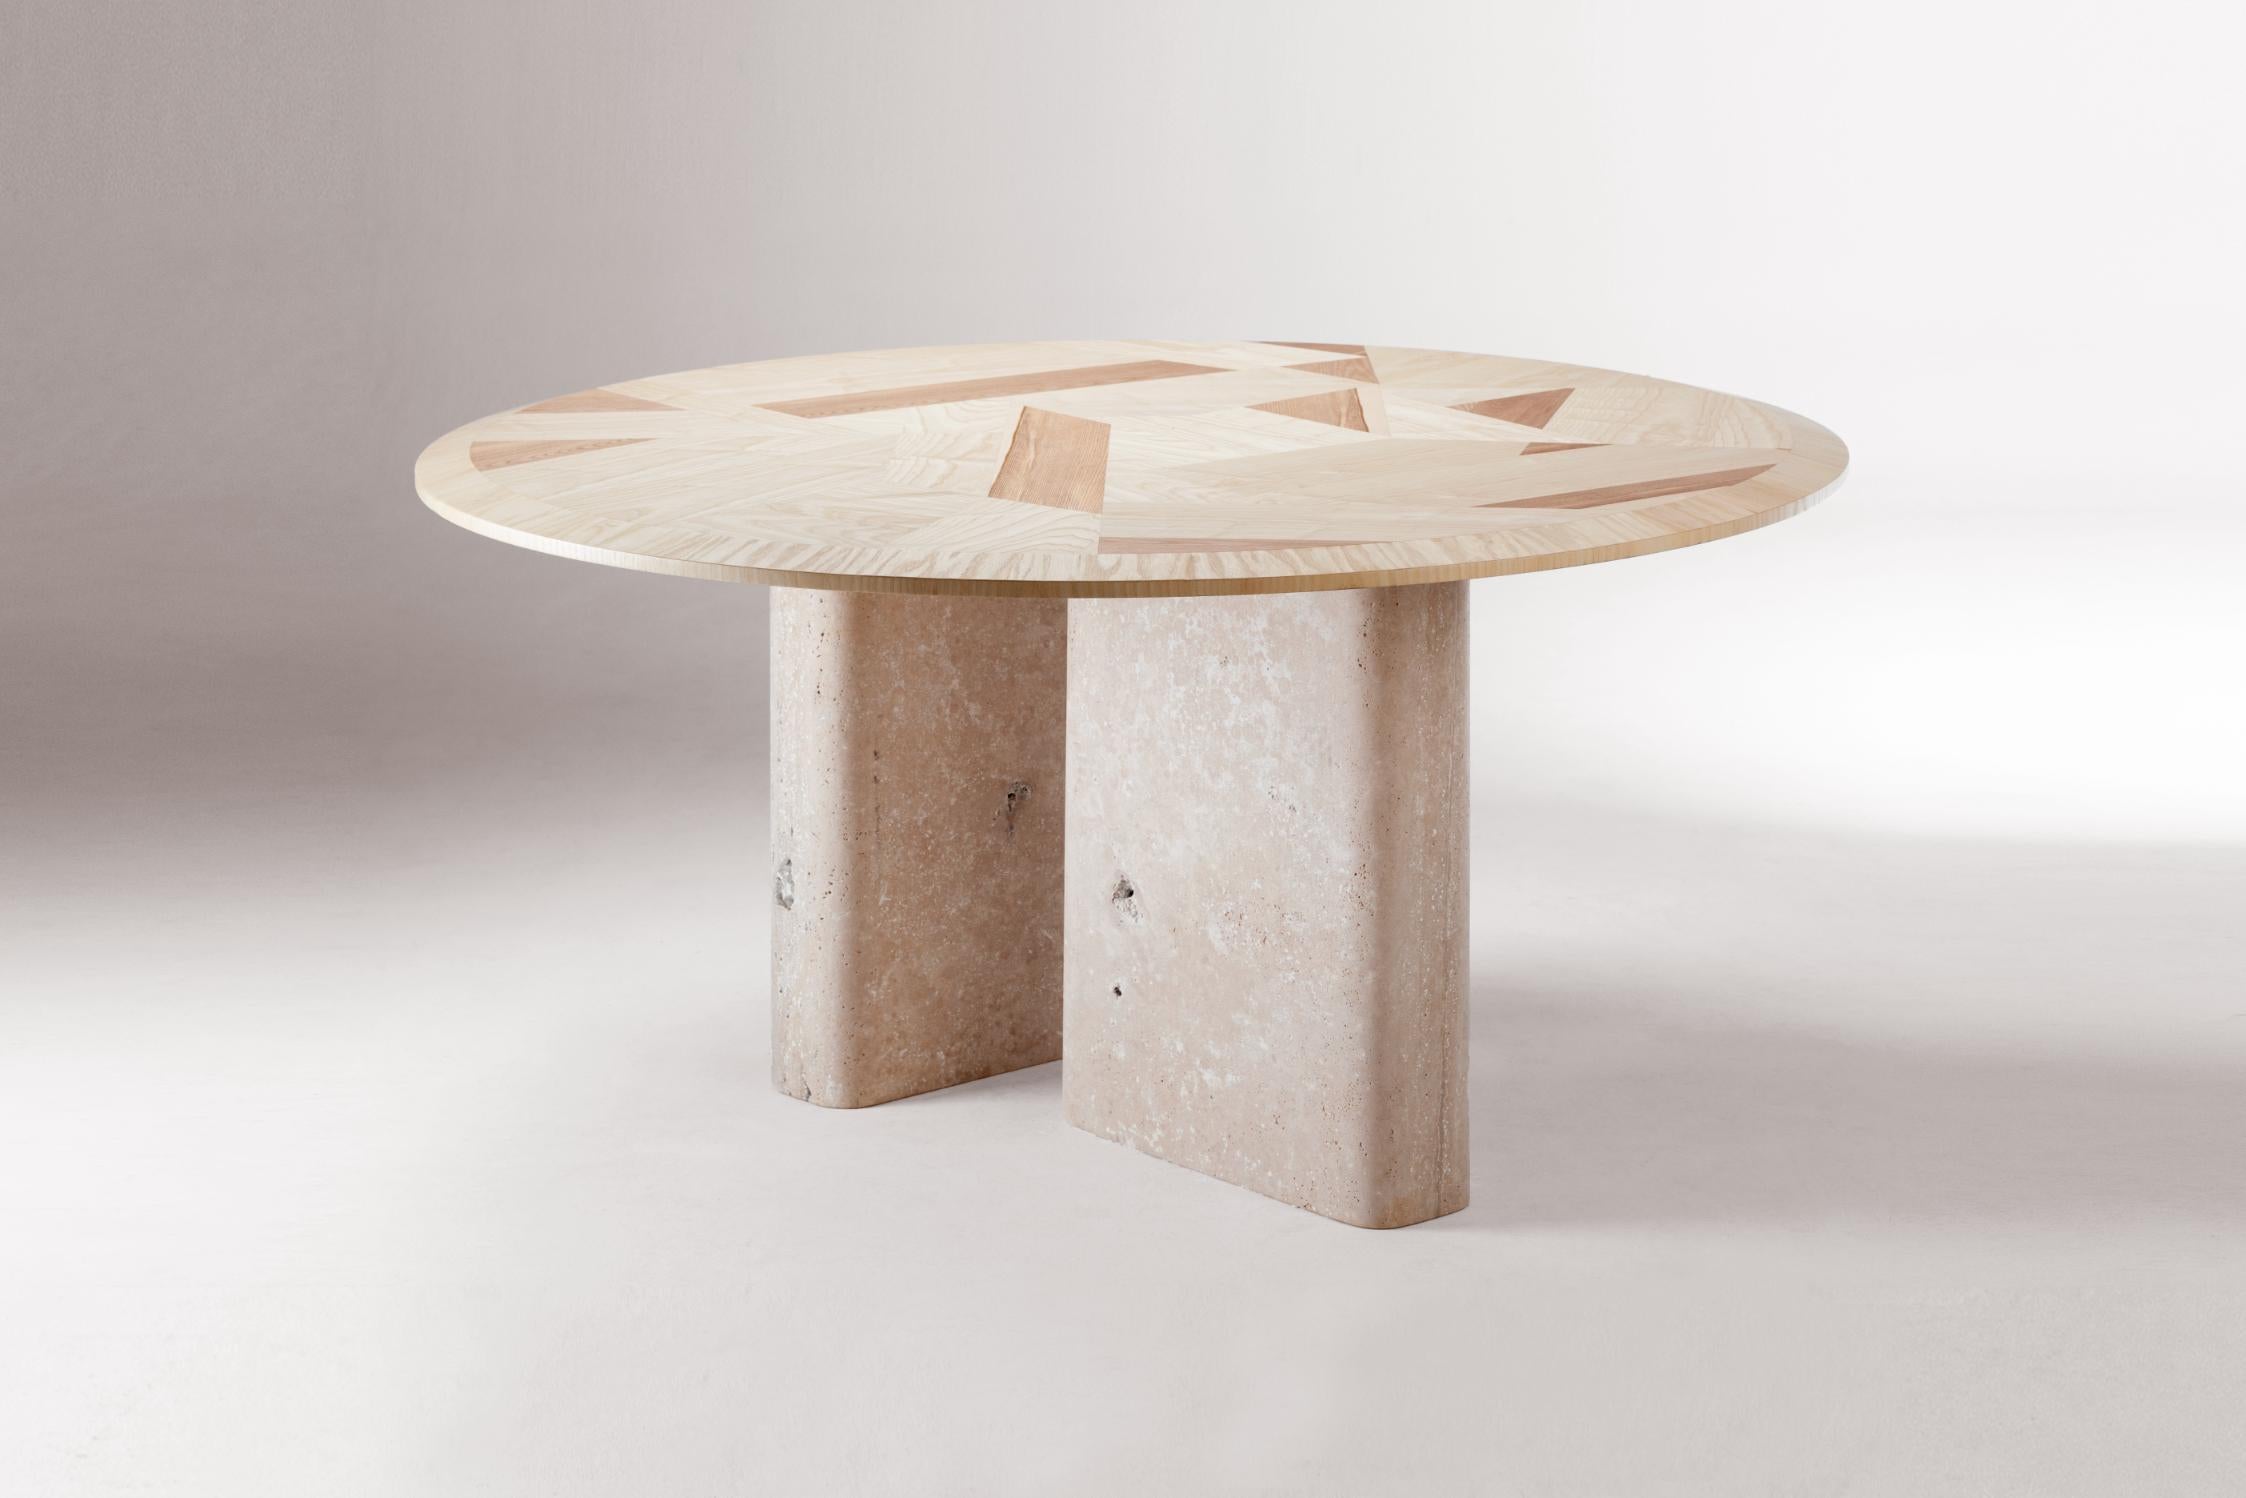 Table à dîner L'anamour par Dooq
Dimensions : ø 150 x H 78 cm
MATERIAL : Bois de frêne, travertin naturel.

L'anamour est une table à manger où la connexion entre la base et le plateau est aussi parfaite qu'une relation entre un poète et sa muse,